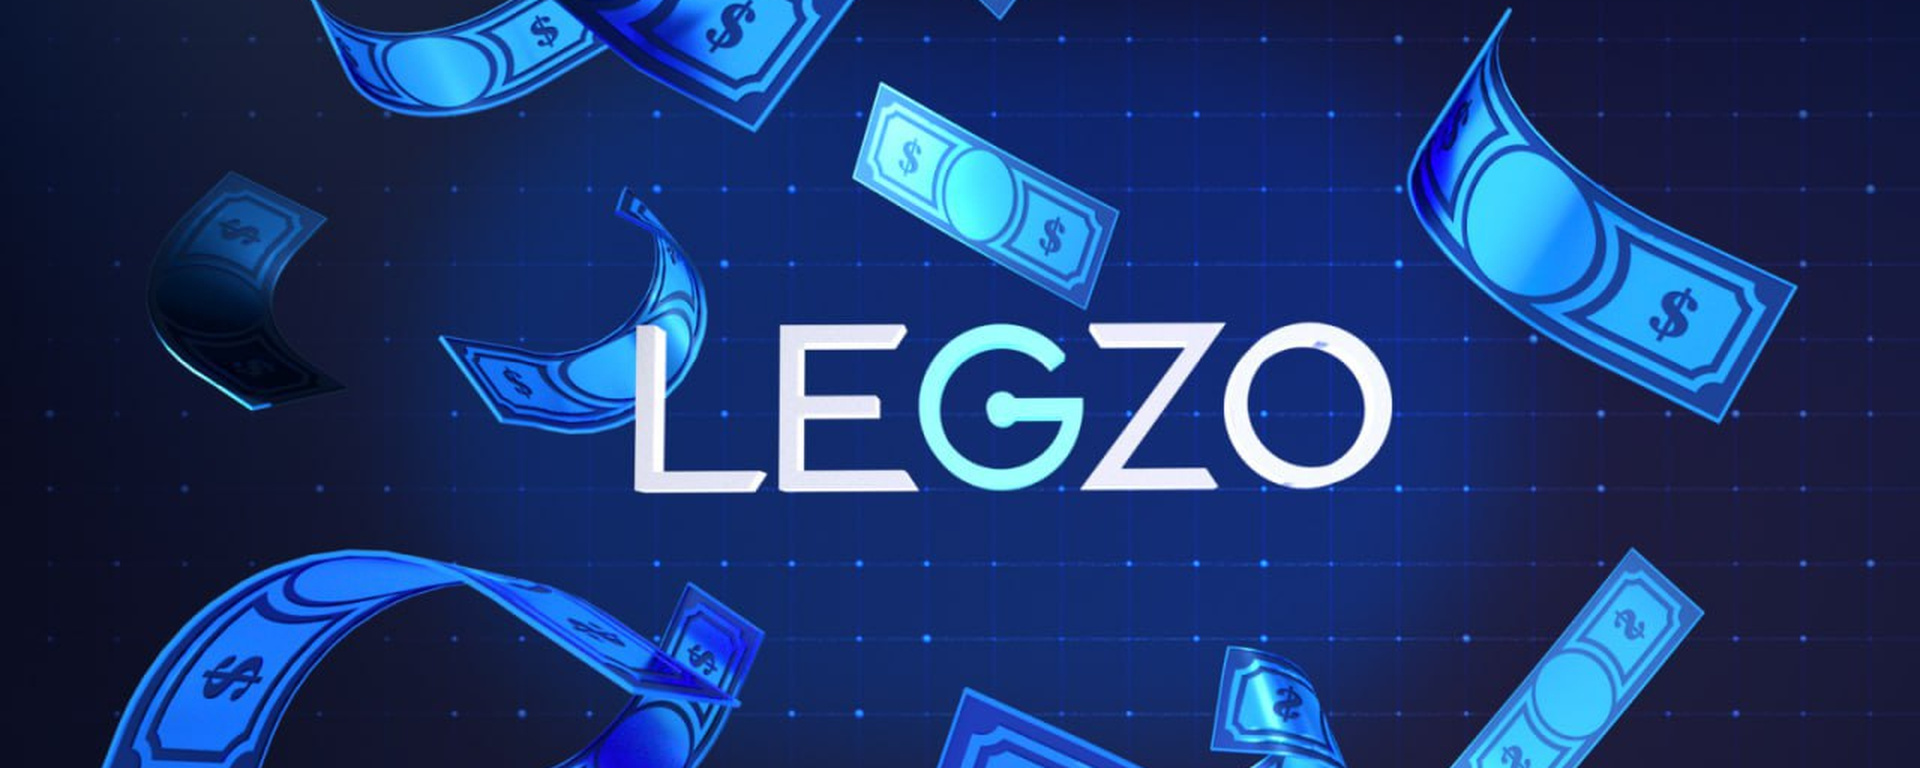 Почему стоит выбрать официальный сайт Легзо Казино?